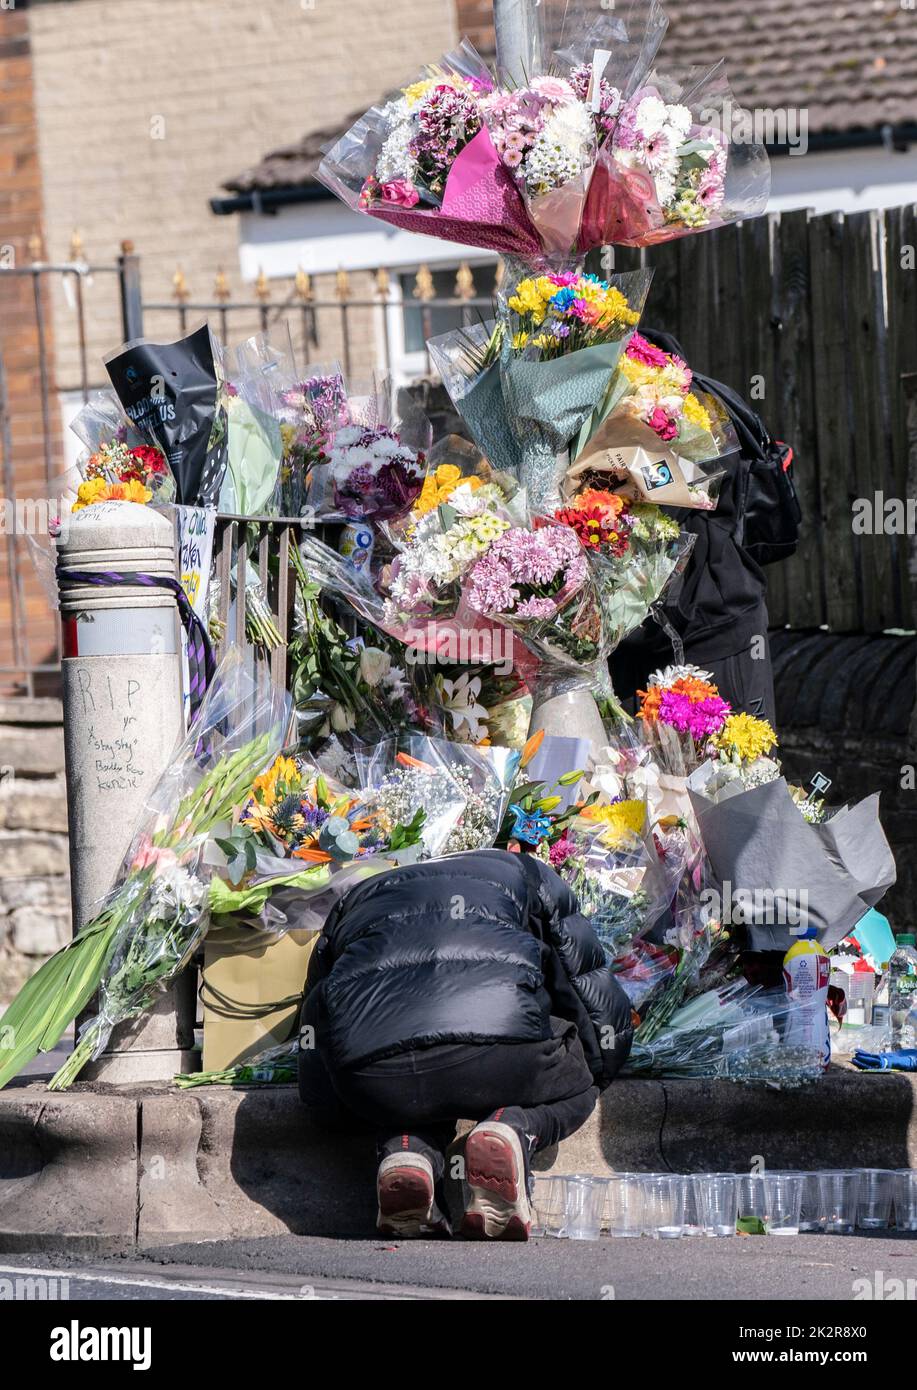 Un alumno se agachó junto a homenajes florales en la escena de Woodhouse Hill, Huddersfield, donde Khayri McLean, de 15 años, fue apuñalado fatalmente fuera de las puertas de su escuela. Fecha de la foto: Viernes 23 de septiembre de 2022. Foto de stock